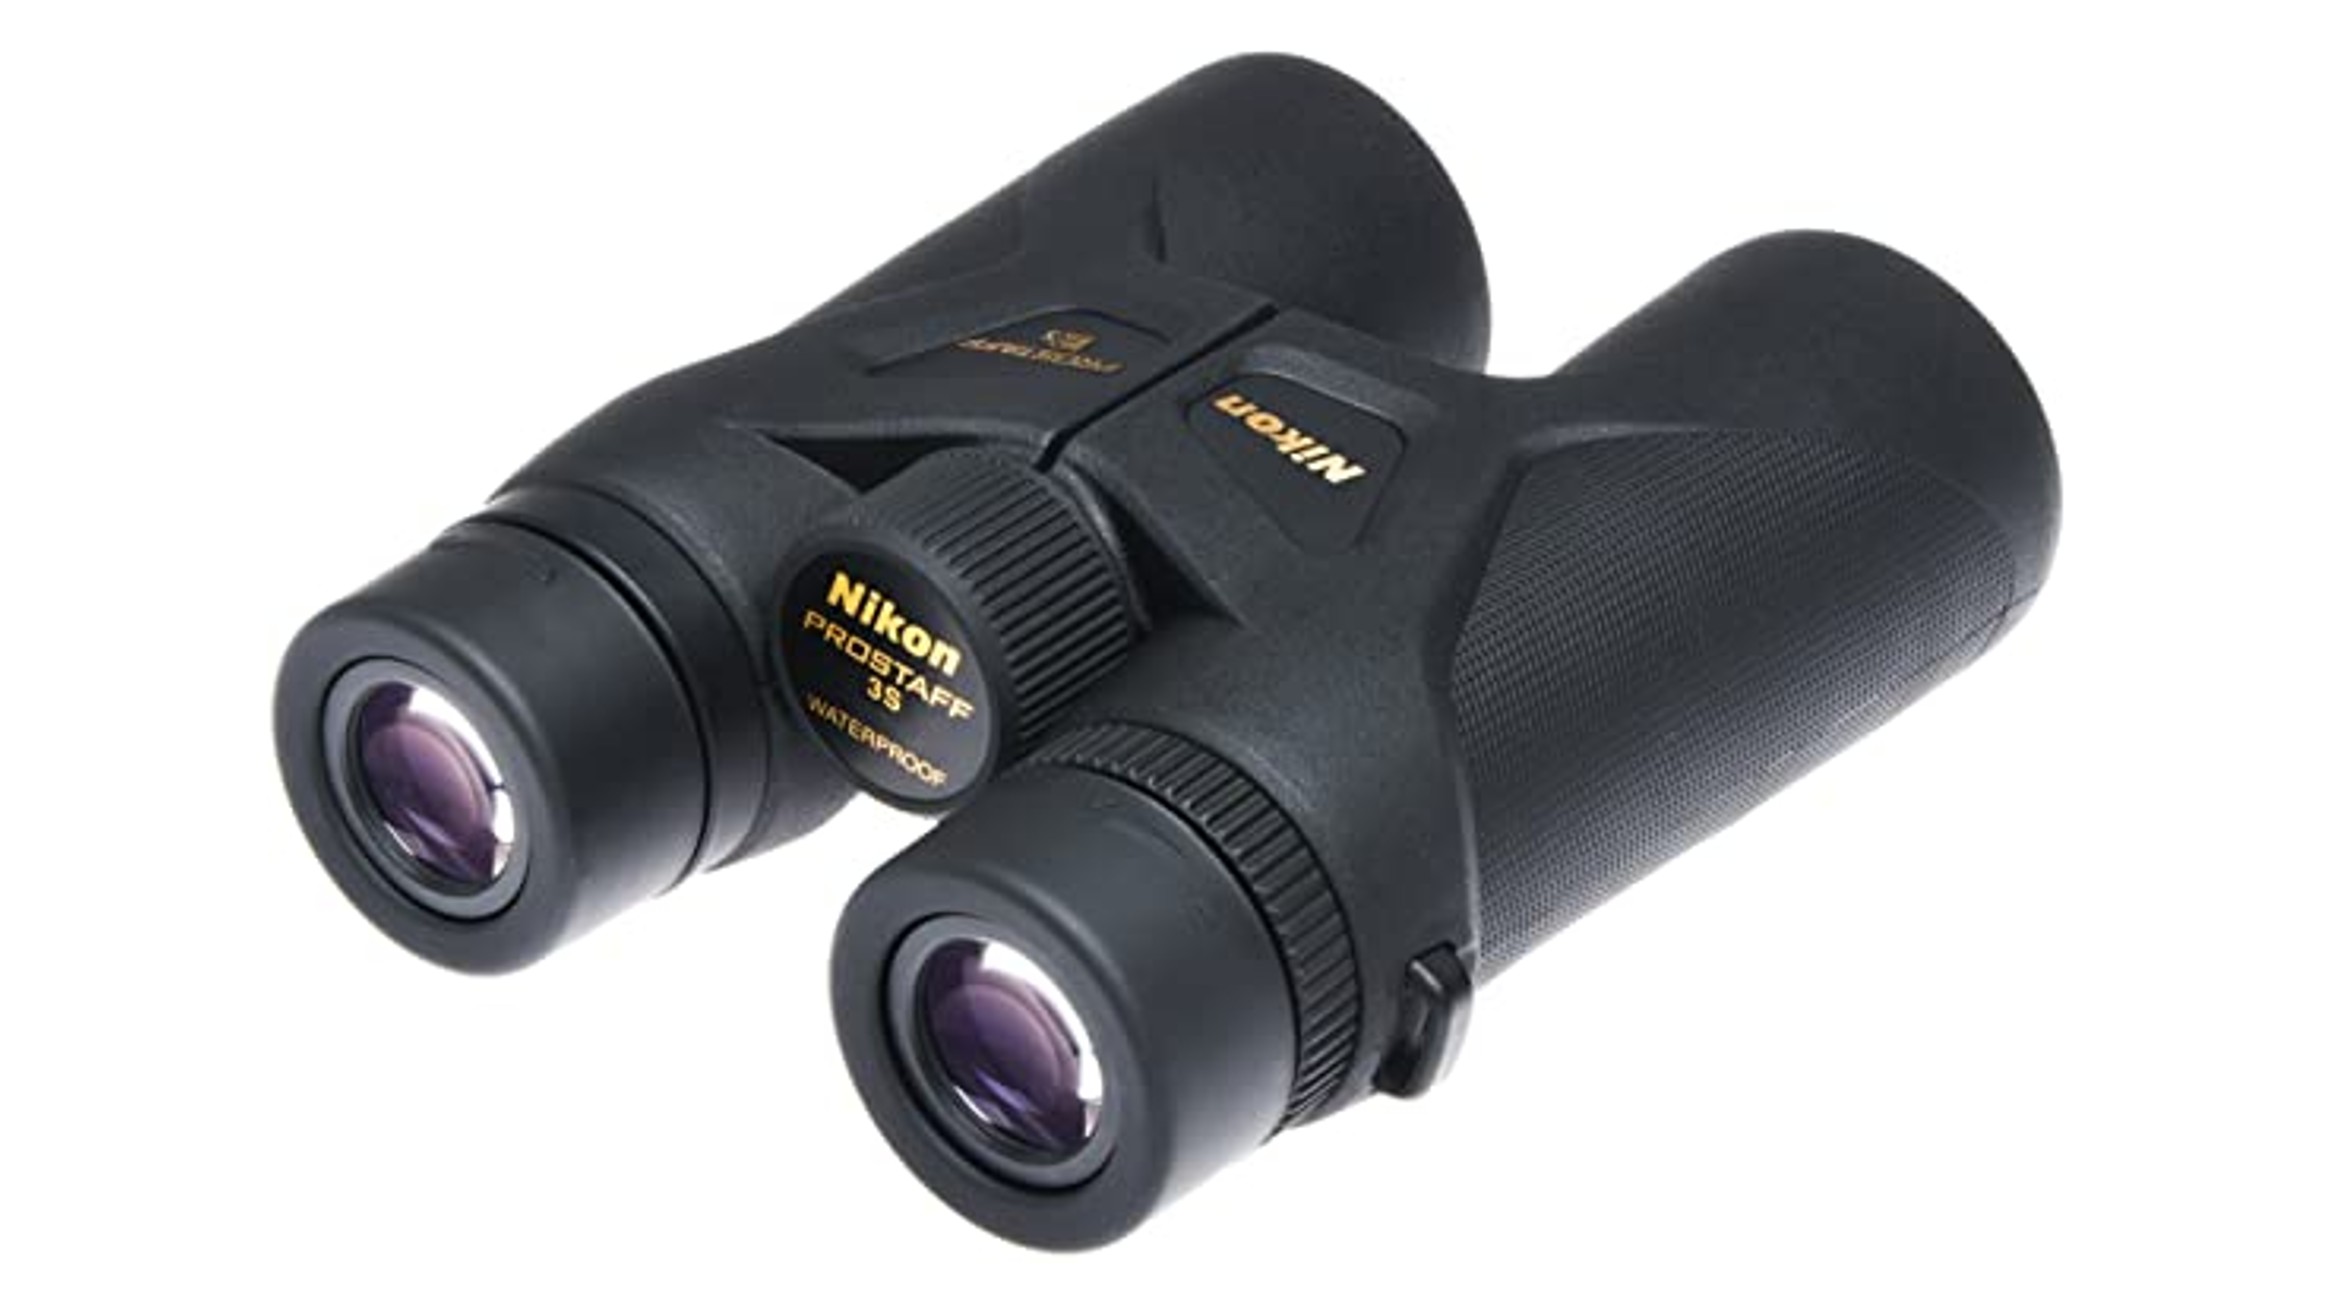 A pair of Nikon Prostaff 3s 10 x 42 Binoculars